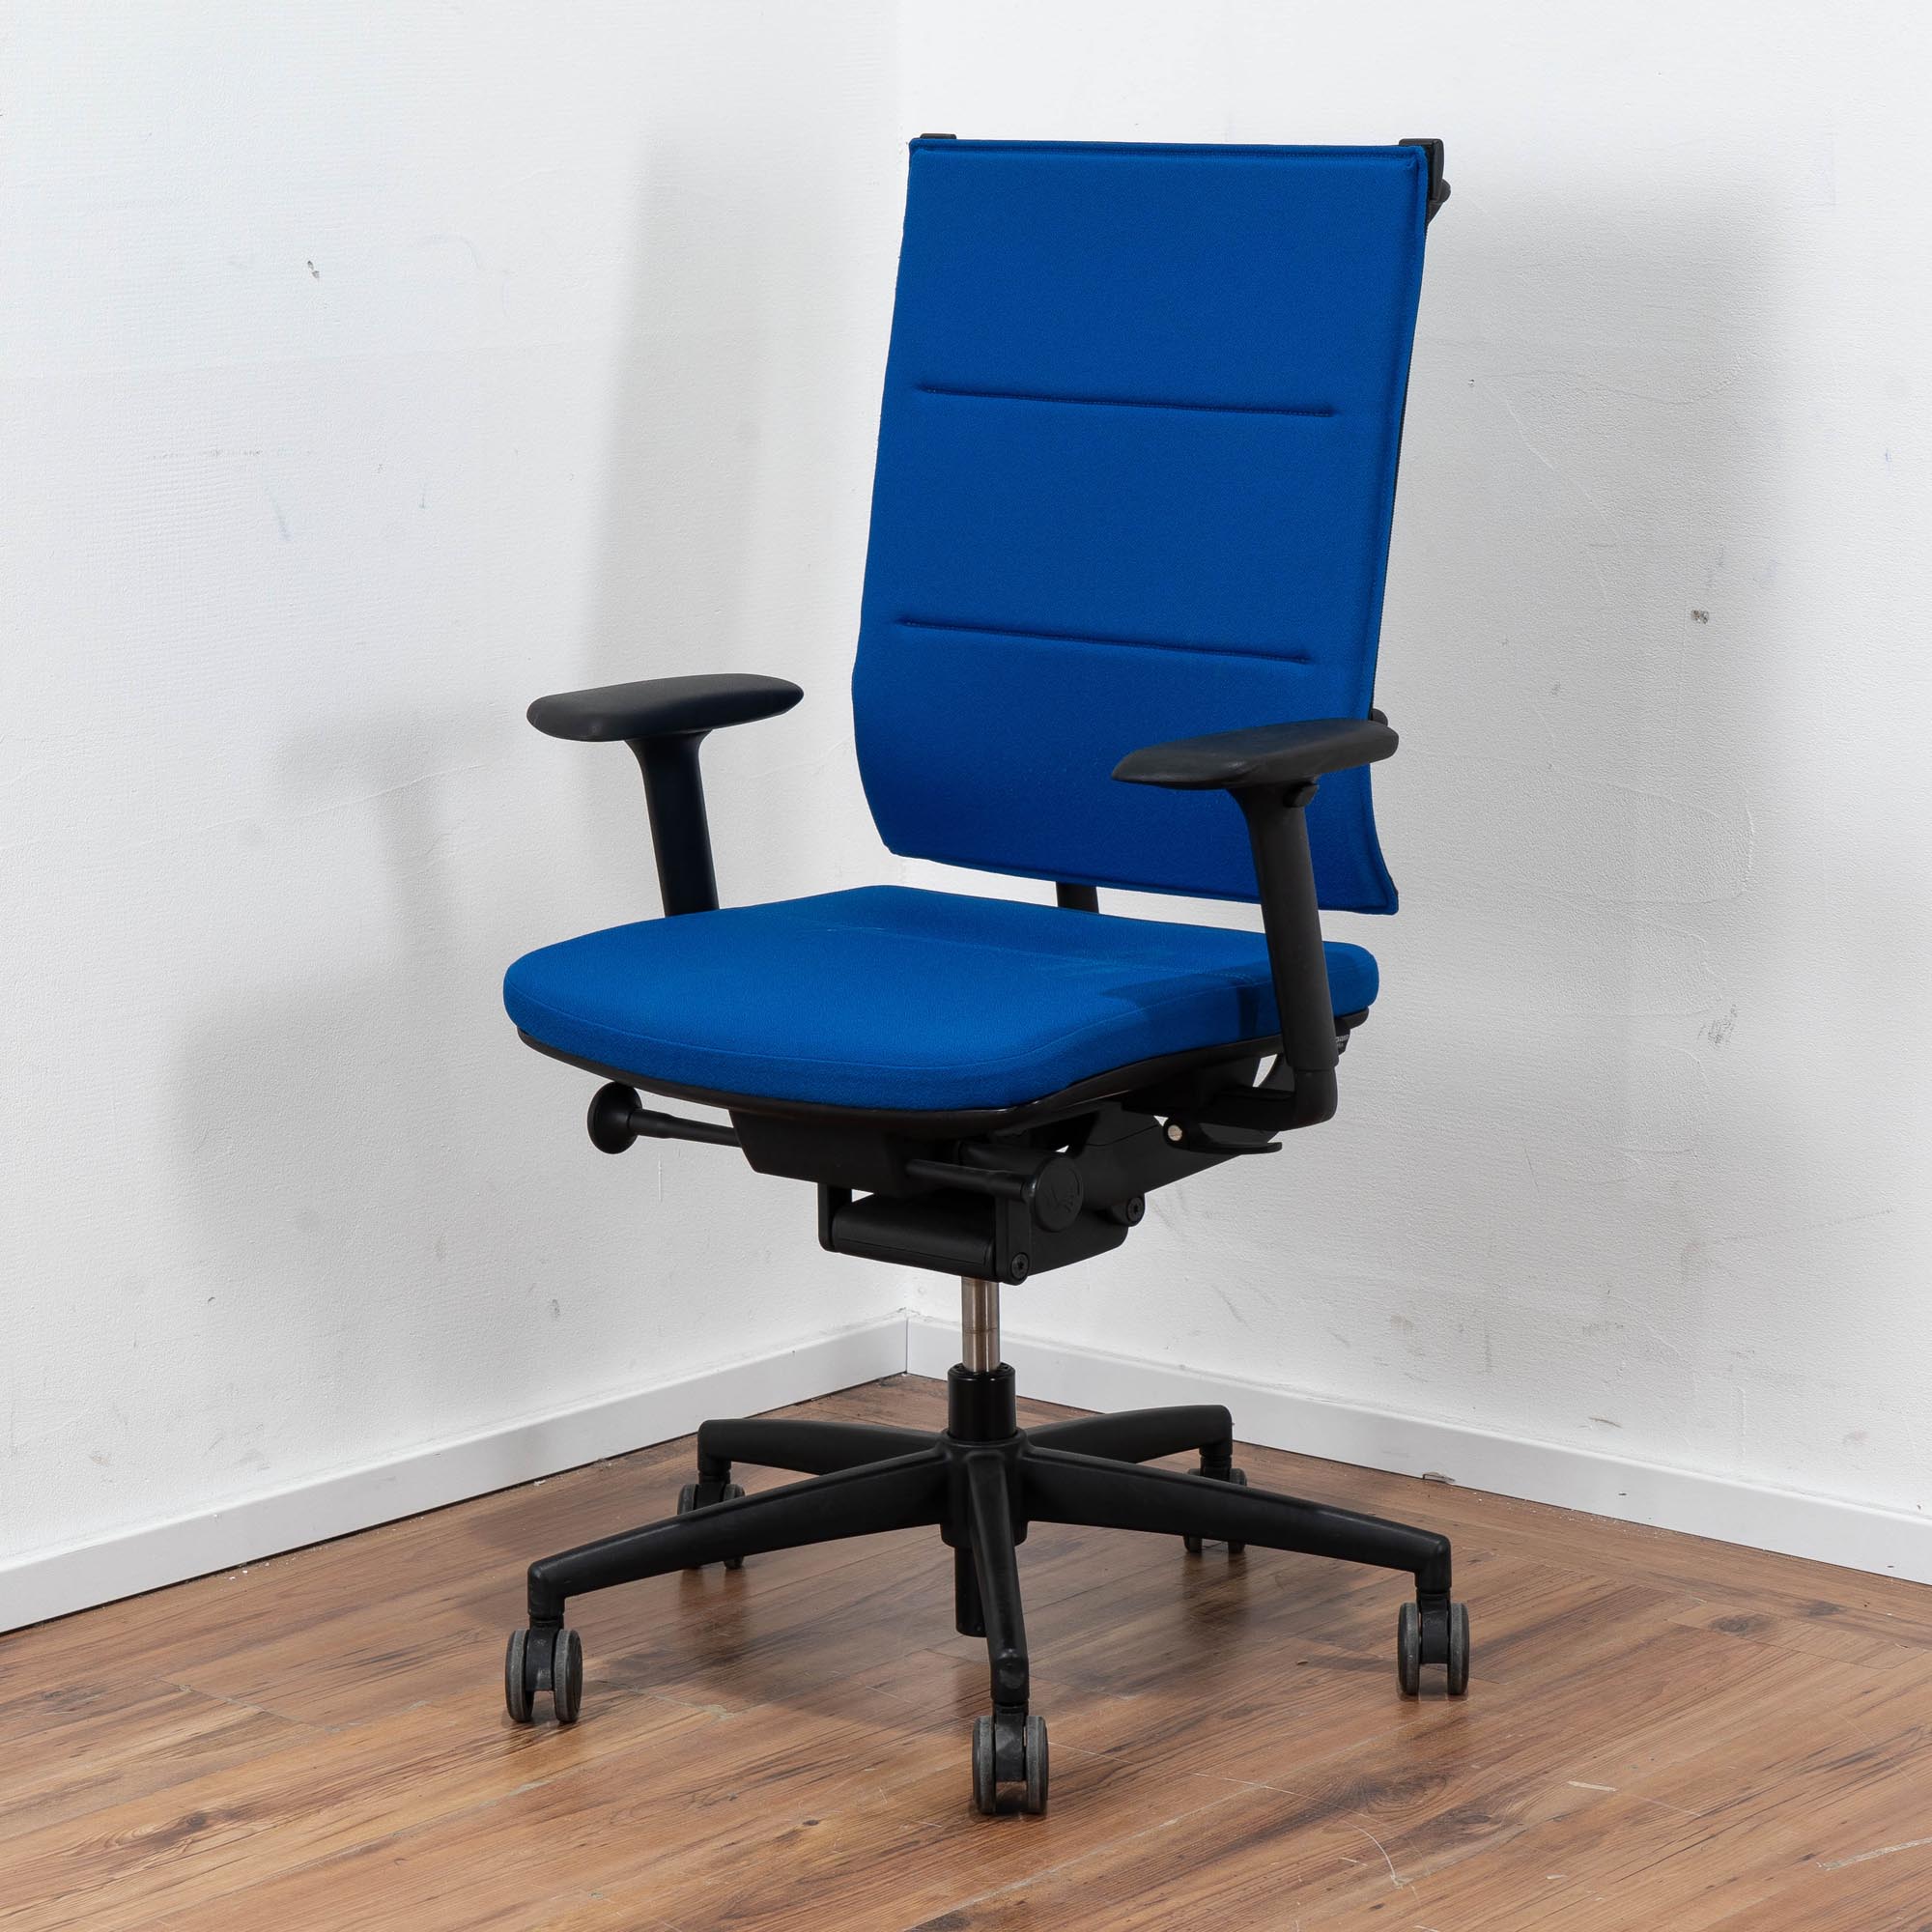 Grammer Bürodrehstuhl Stoff blau - 5-Sterngestell schwarz